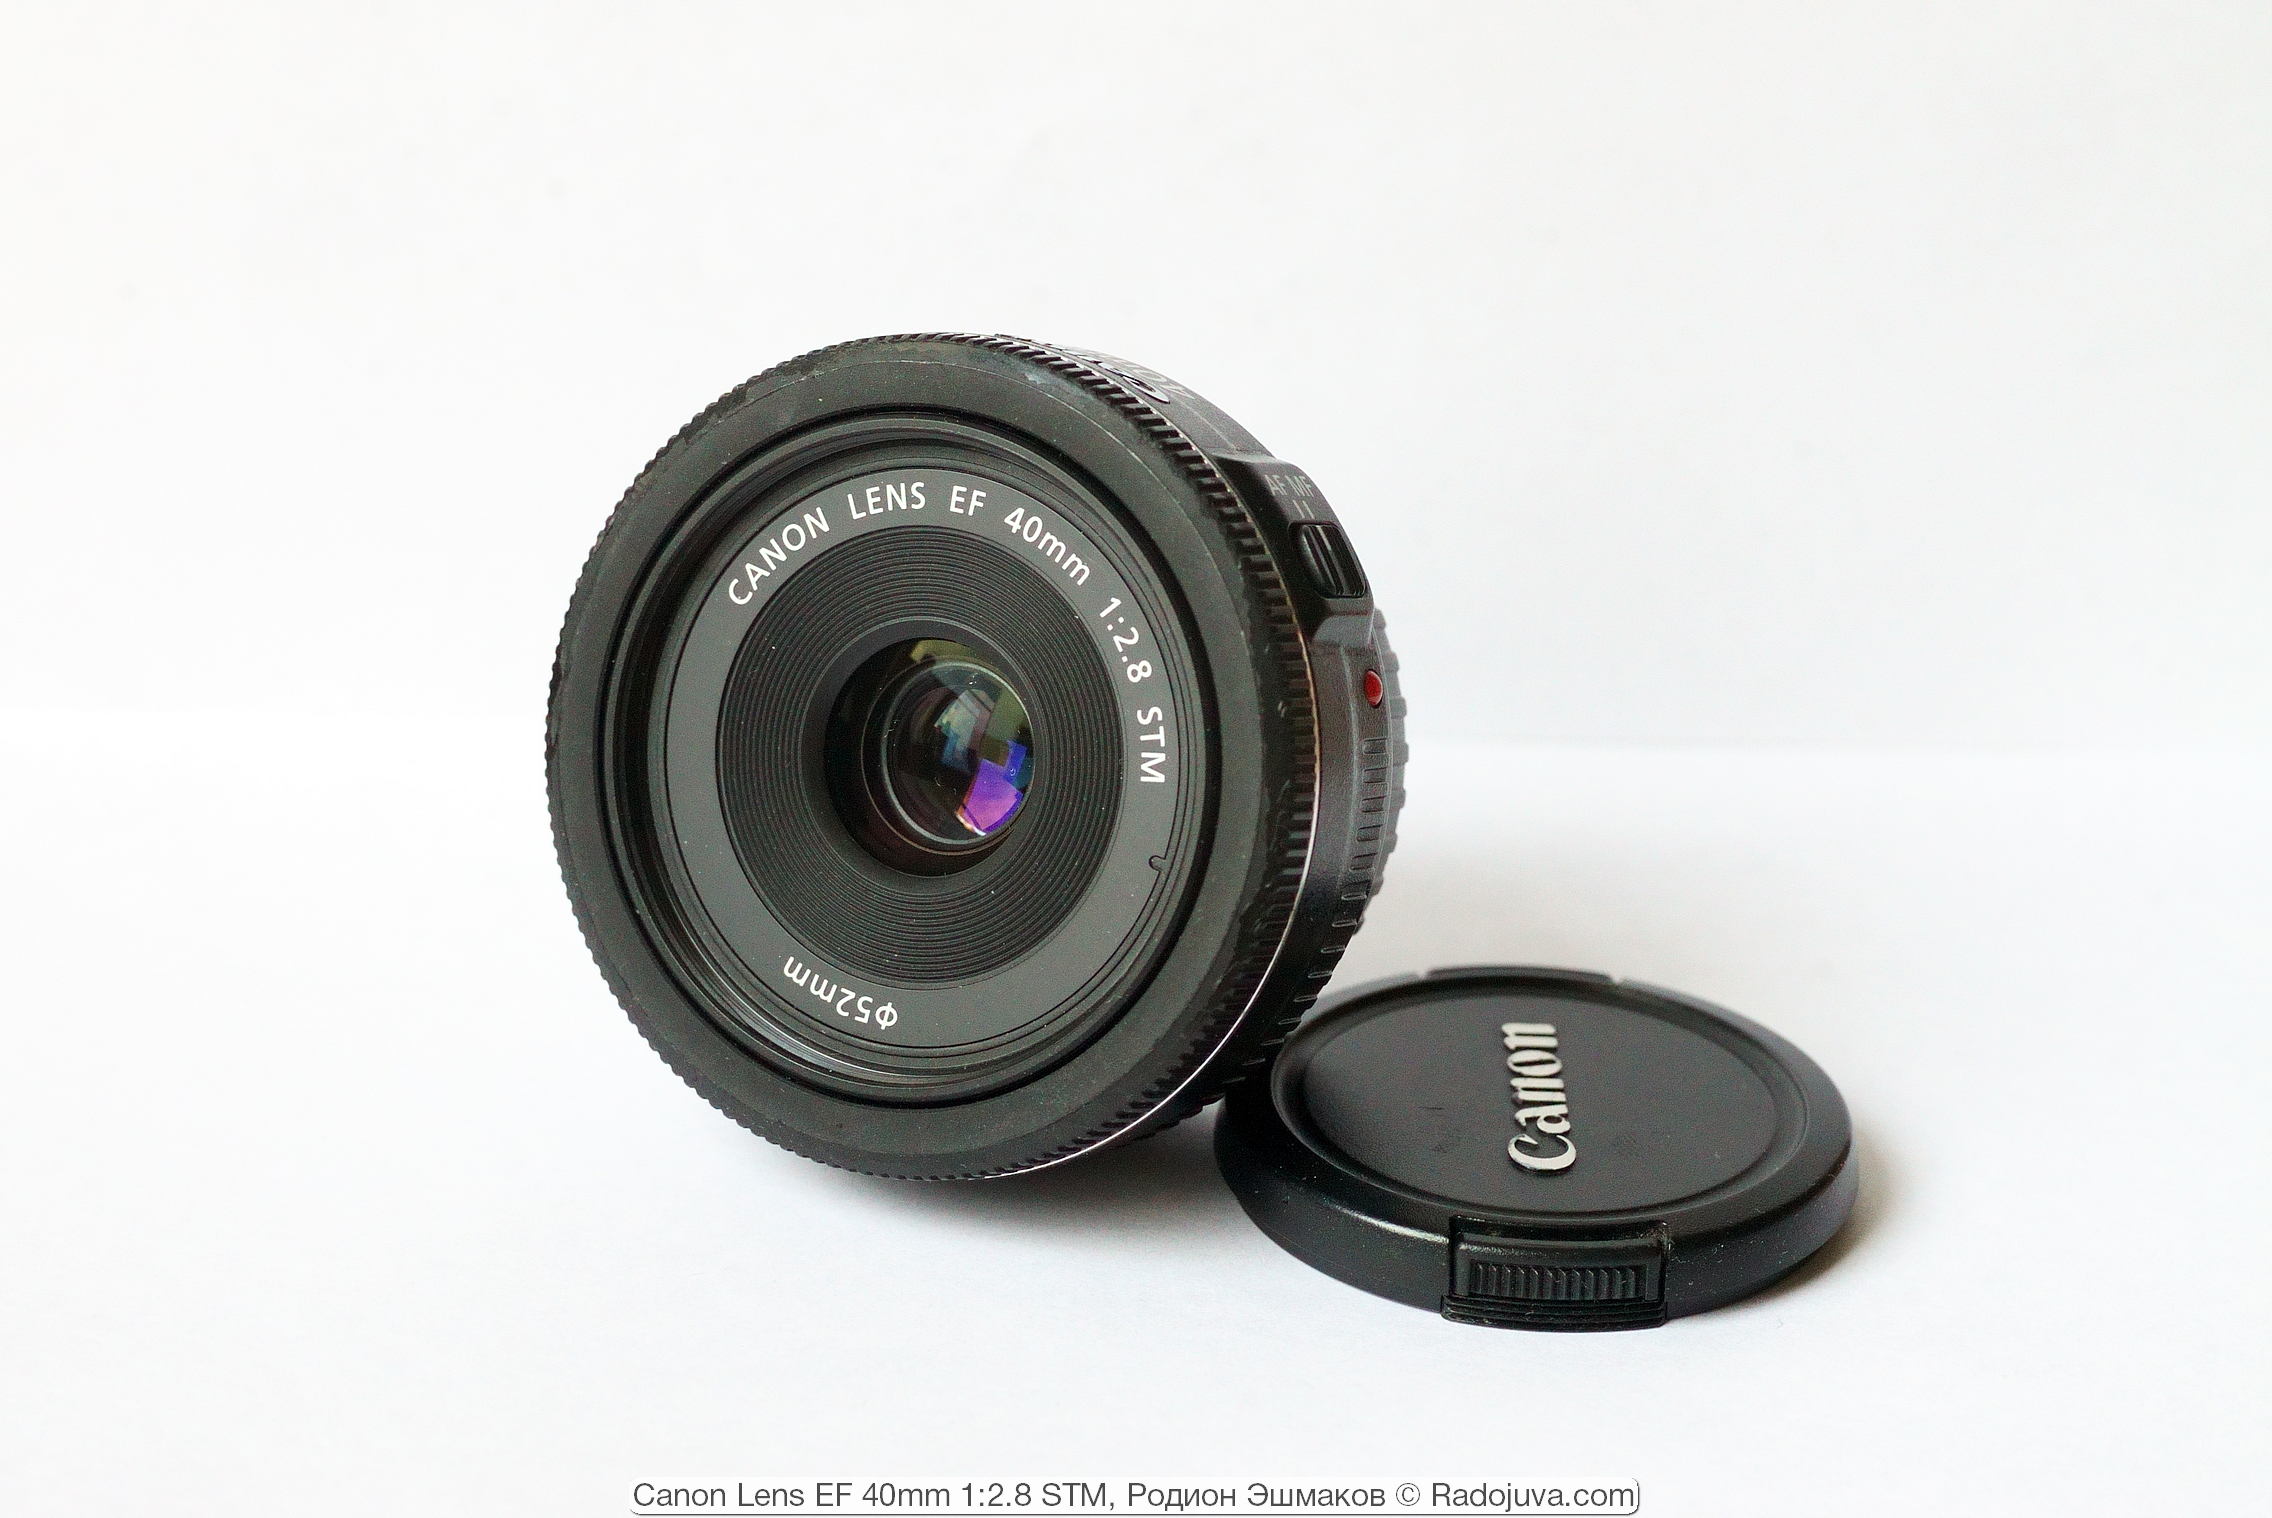 Pancake Canon Lens EF 40mm 1: 2.8 STM. Anniversary hundredth